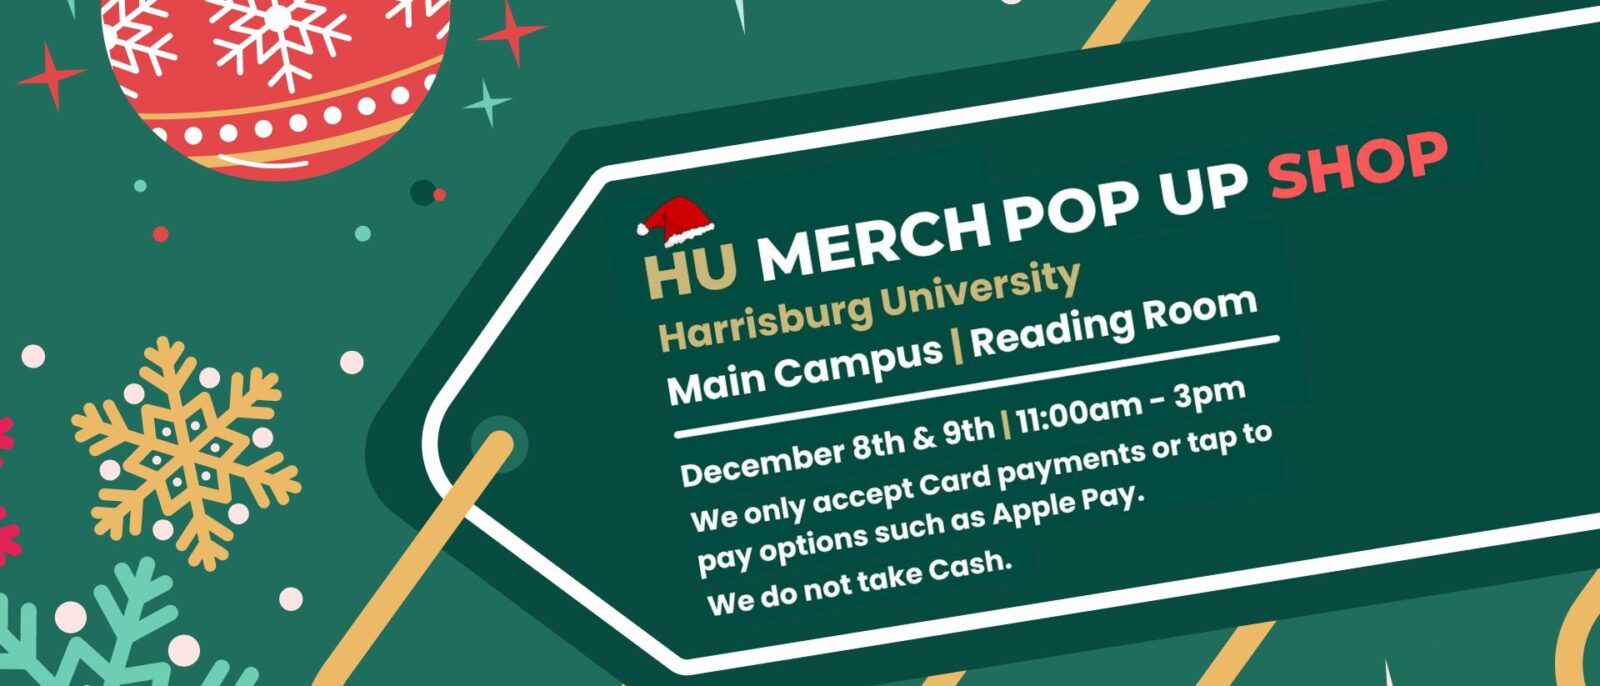 HU Merch Pop UP Shop open Dec. 8-9